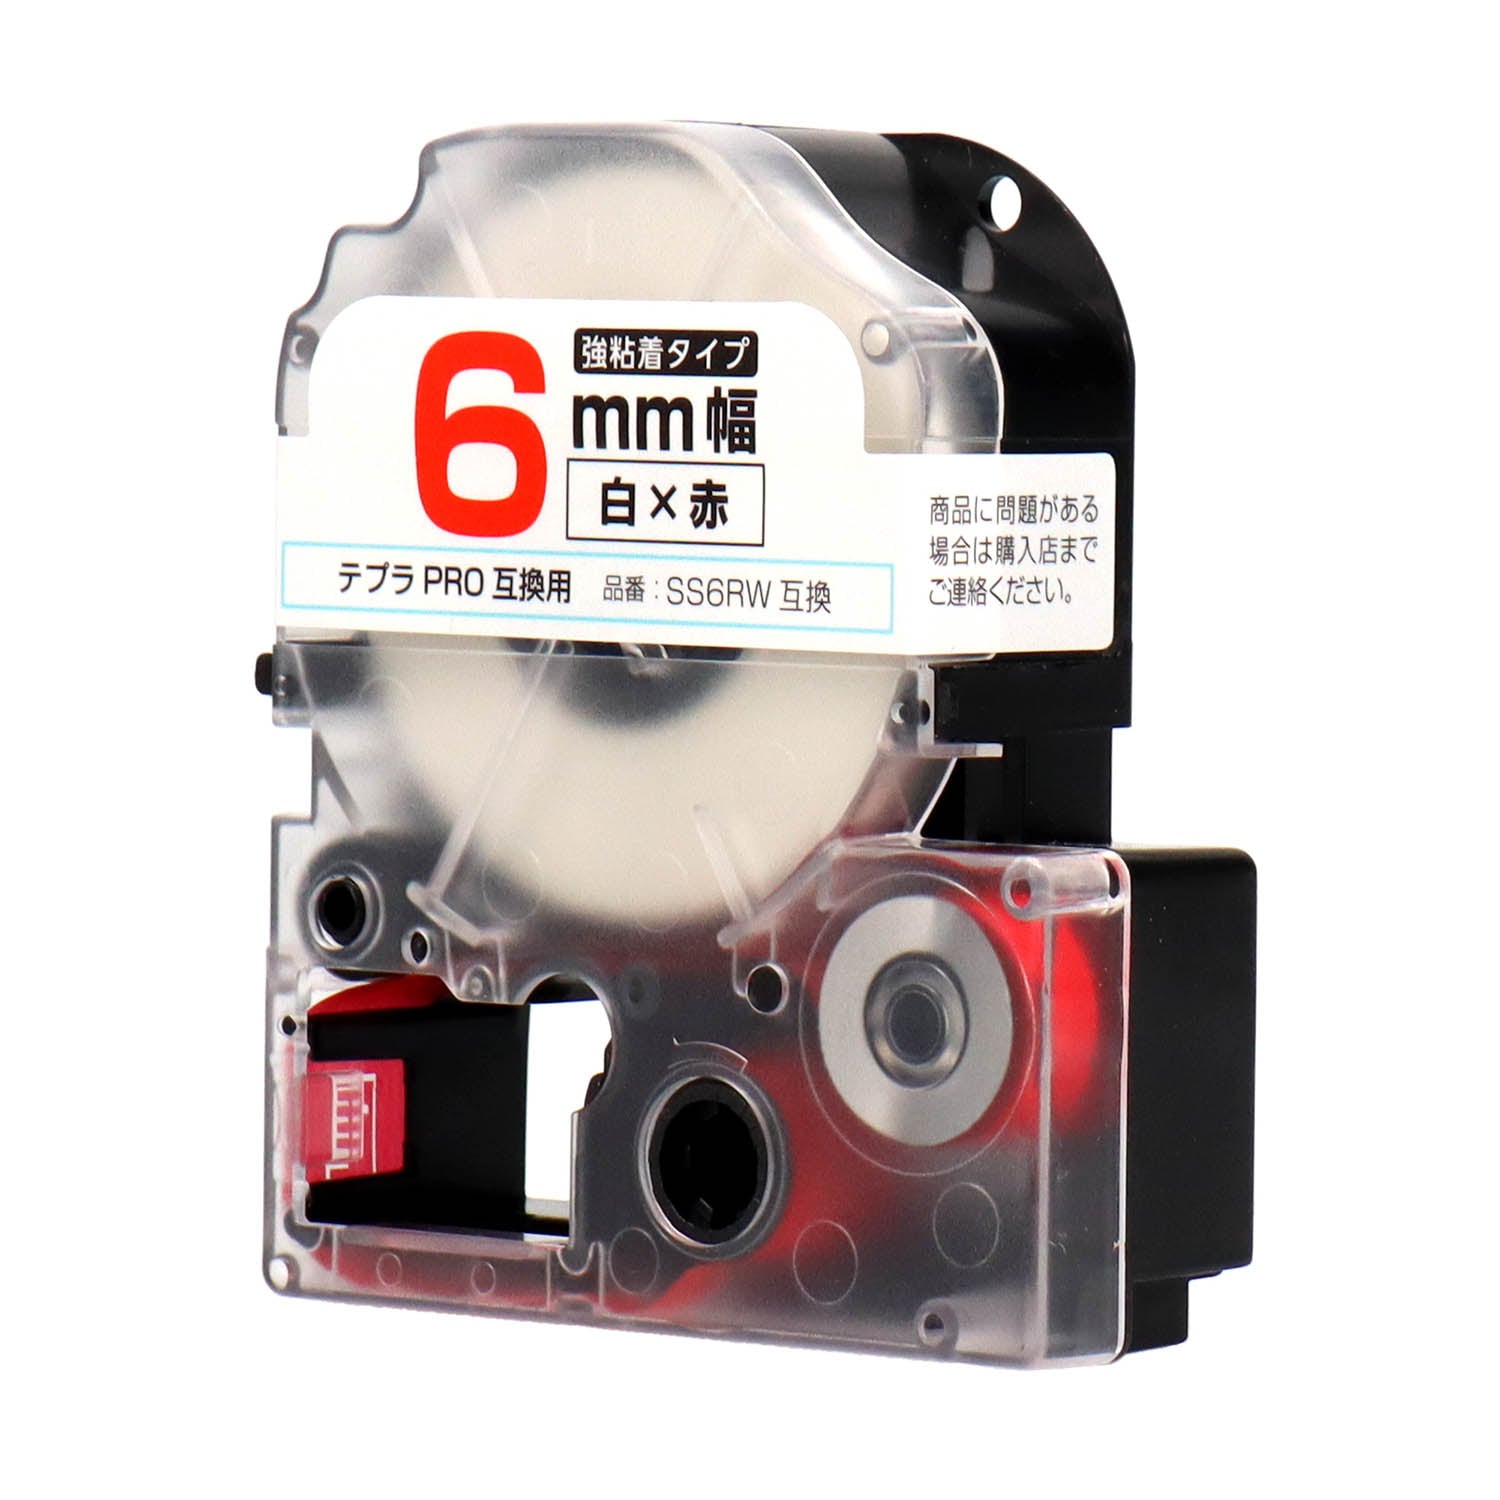 テプラPRO用互換テープカートリッジ 白×赤文字 6mm